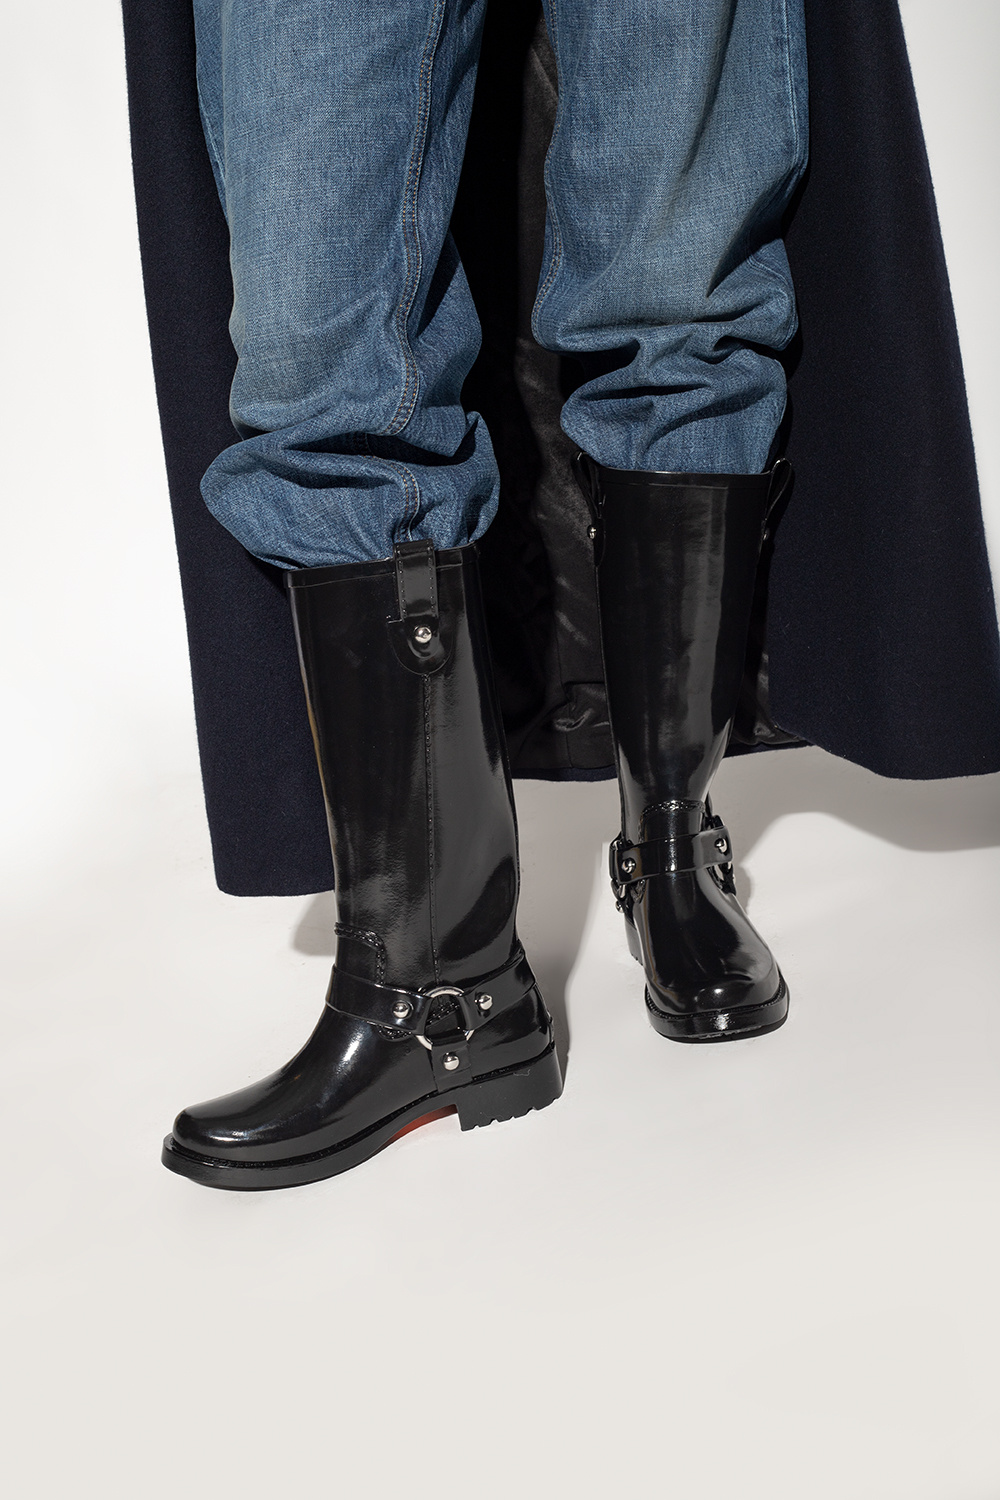 Stormy' rain boots Michael Michael Kors - Knee High Boots FLAMINGO -  QuartierdescapucinsShops Lebanon